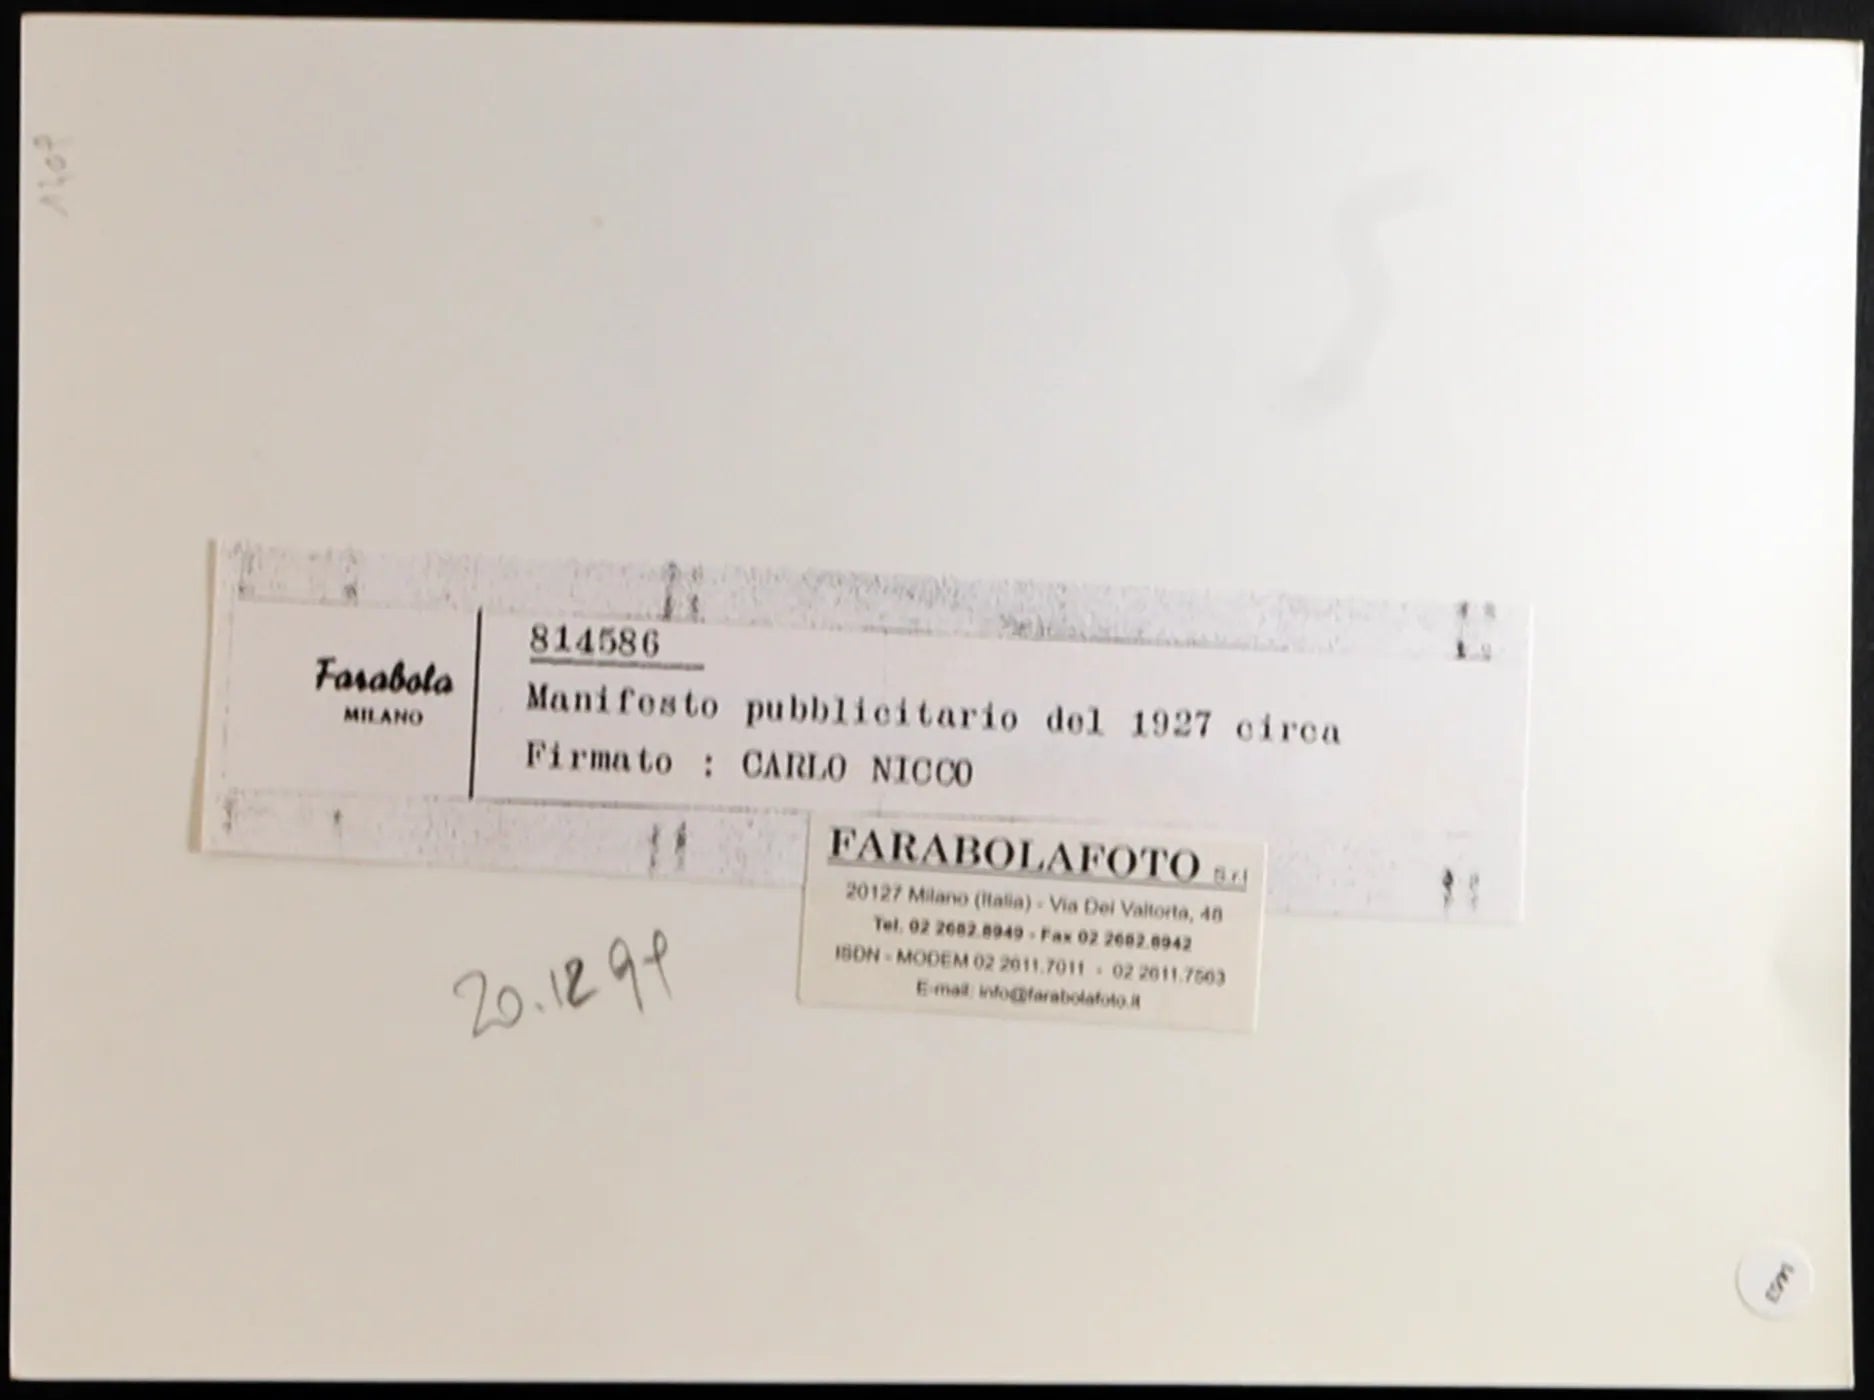 Manifesto Pubblicitario 1927 Ft 1463 - Stampa 24x18 cm - Farabola Stampa ai sali d'argento